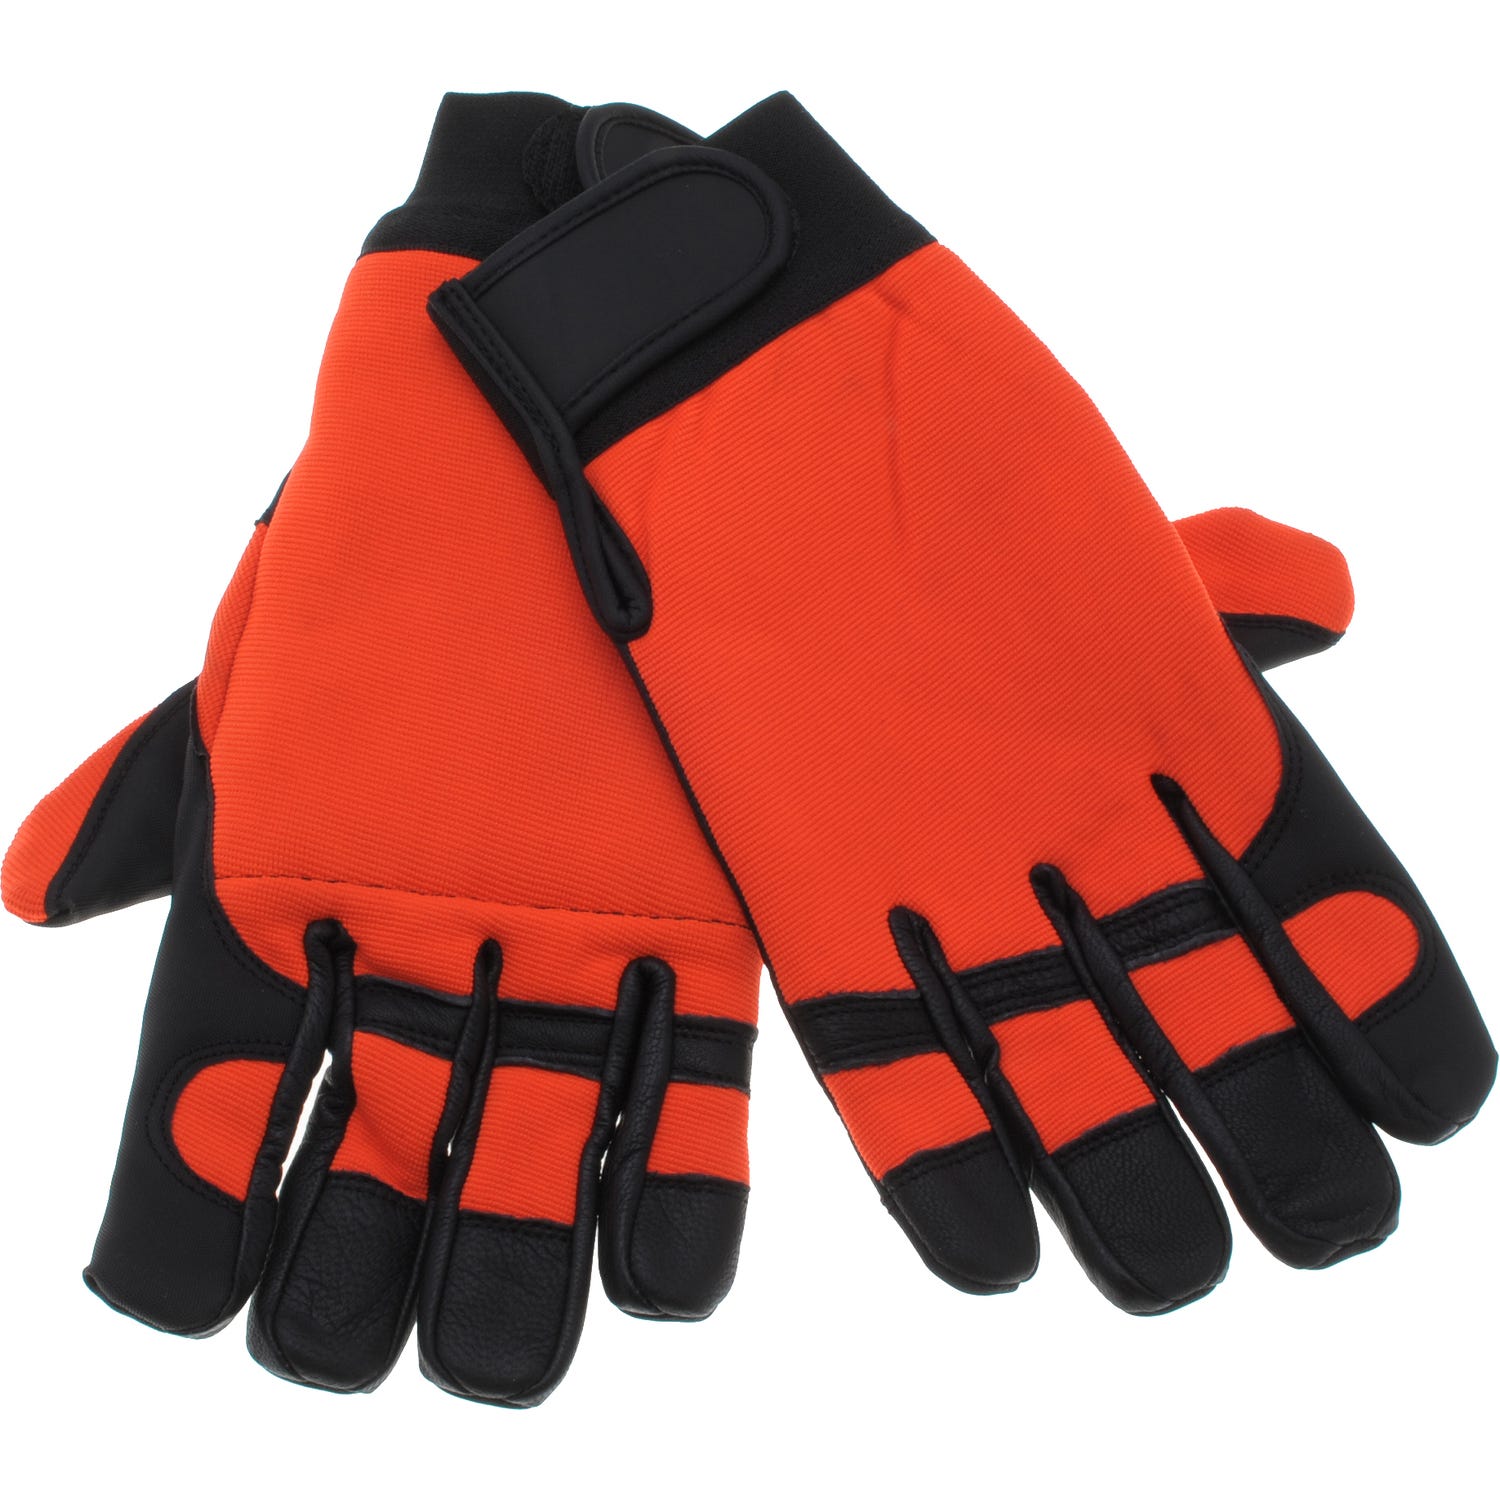 Paire de gants anti-coupure pour tronçonneuse Solidur taille 9